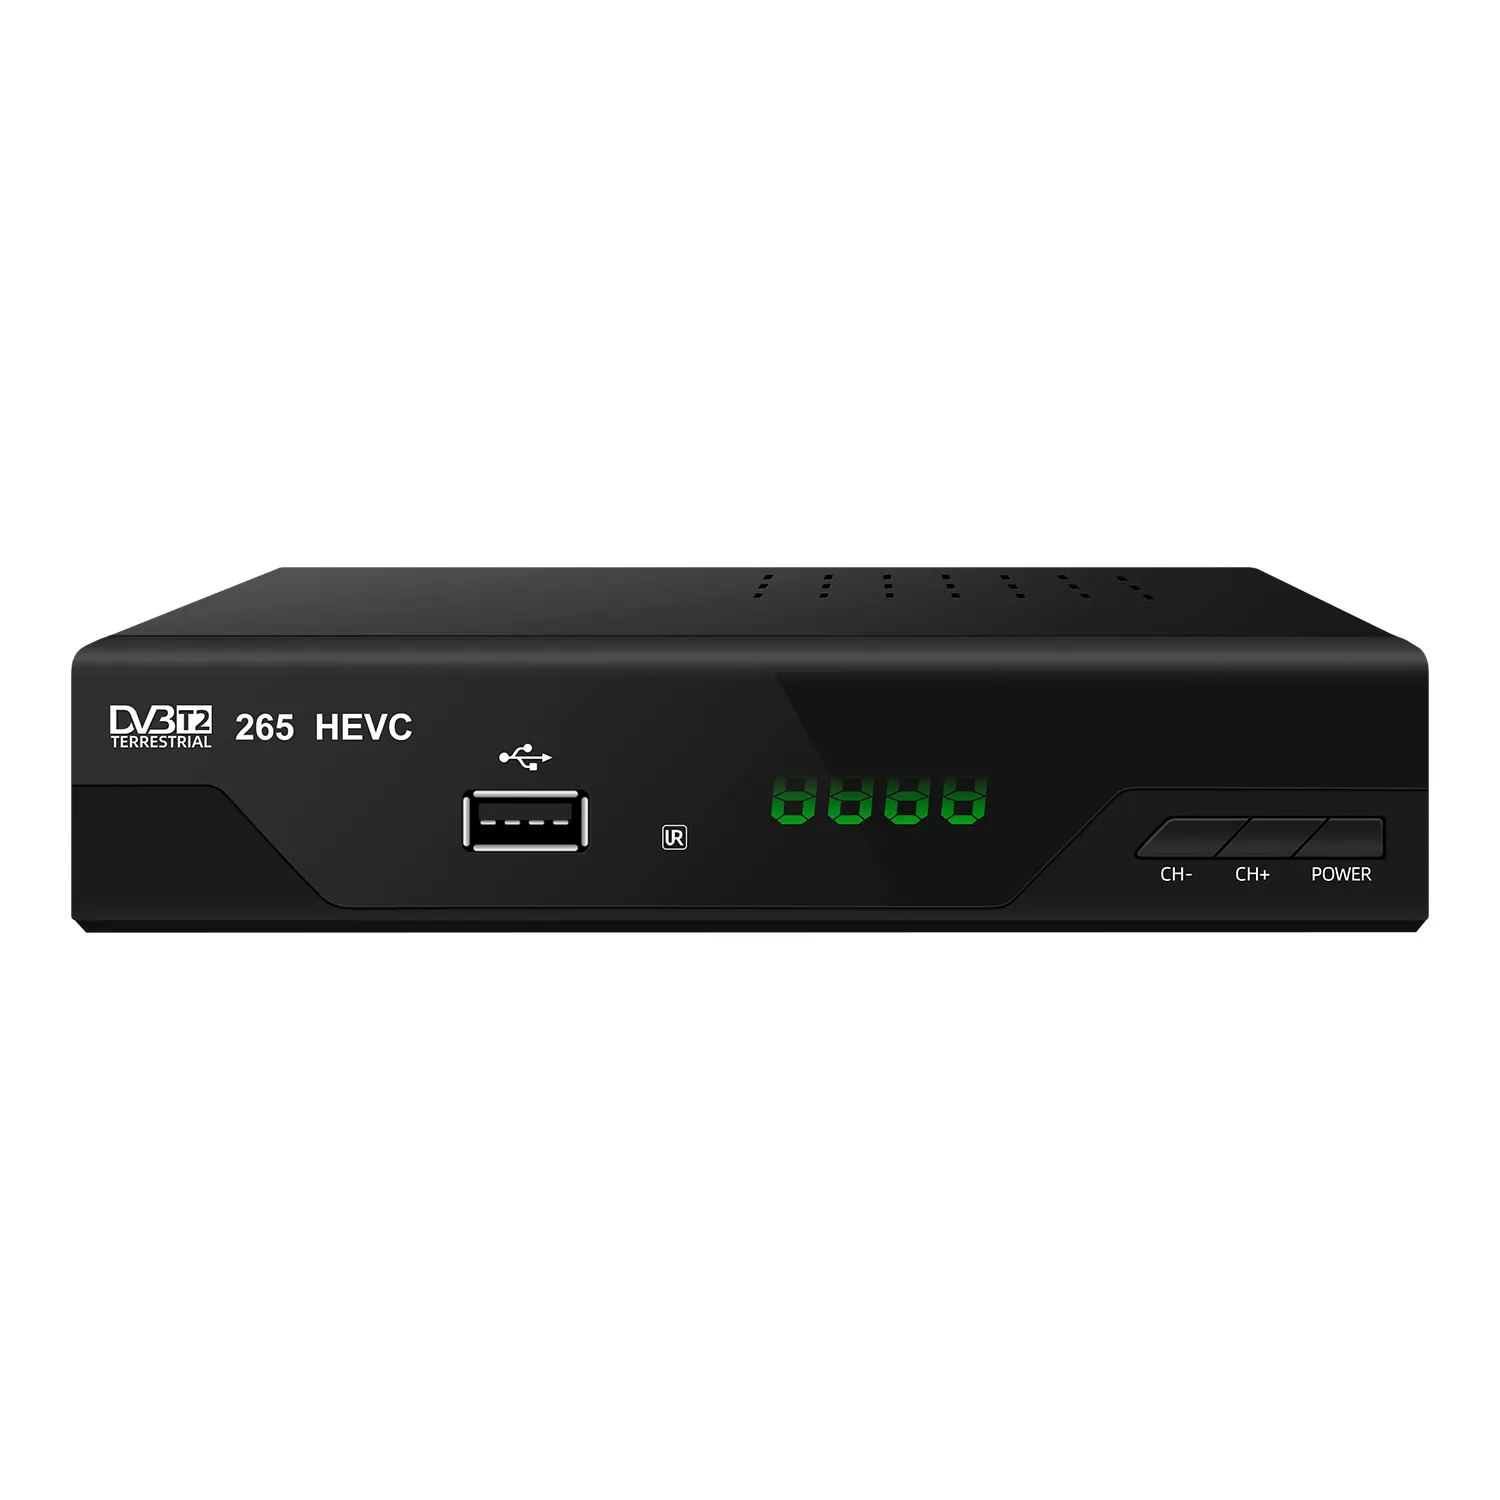 TV digital DVB T2 SCART HD 1080p H265 He vc 10 bit GX6702 H5 S5 1000 filmes grátis decodificador de tv digital dvbt2 set top box receptor